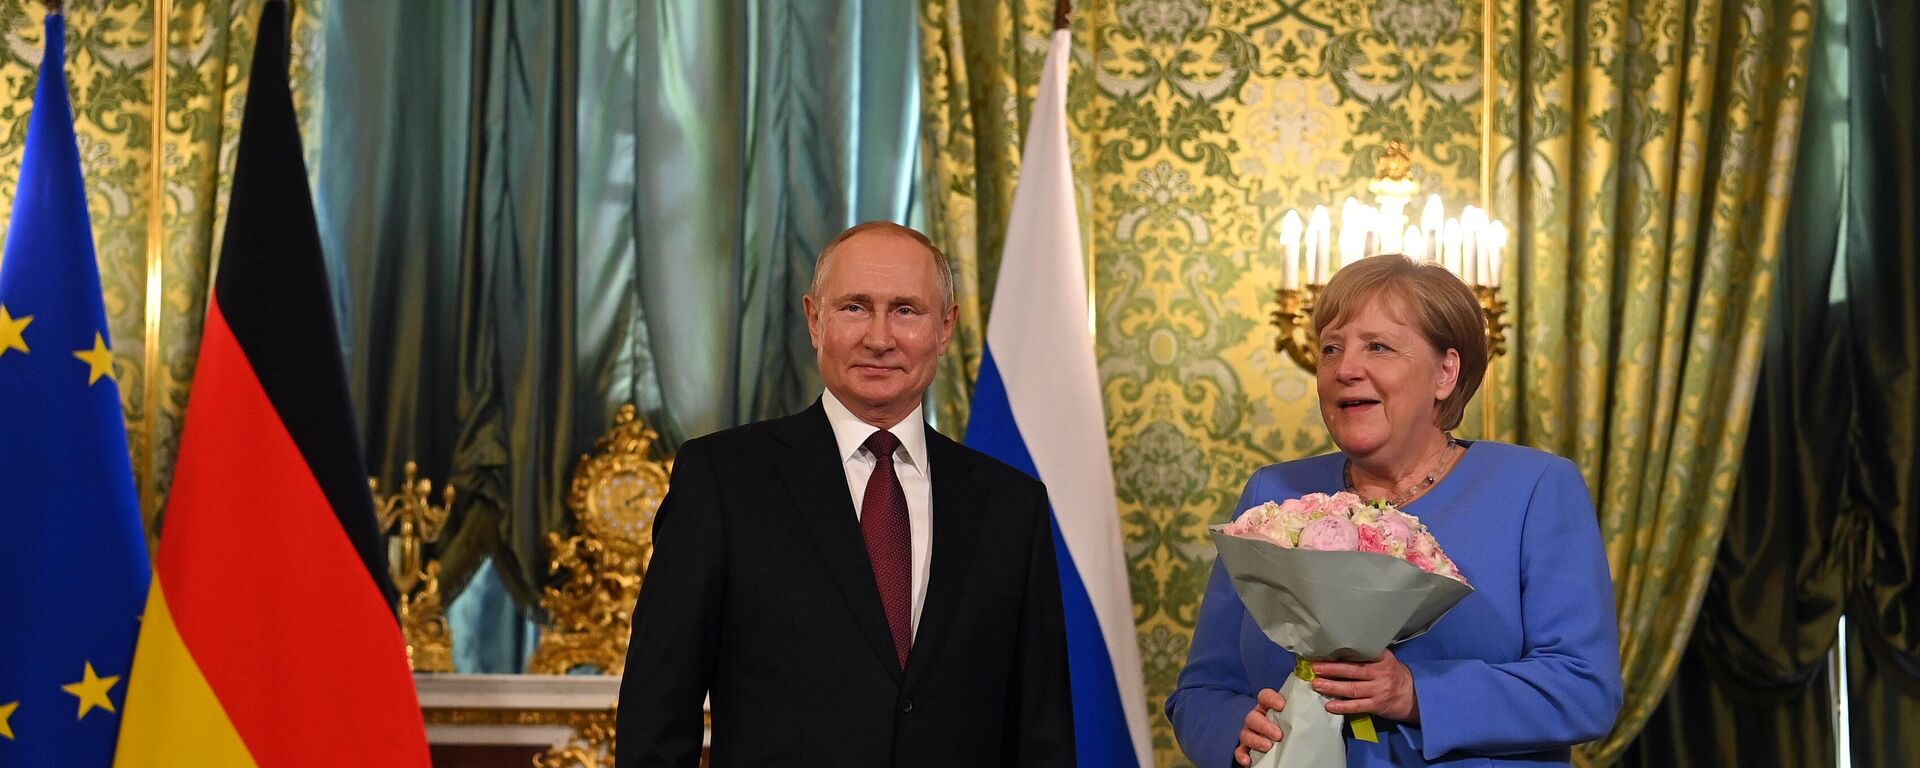 Президент РФ Владимир Путин и канцлер Германии Ангела Меркель во время встречи в Кремле - Sputnik Литва, 1920, 21.08.2021